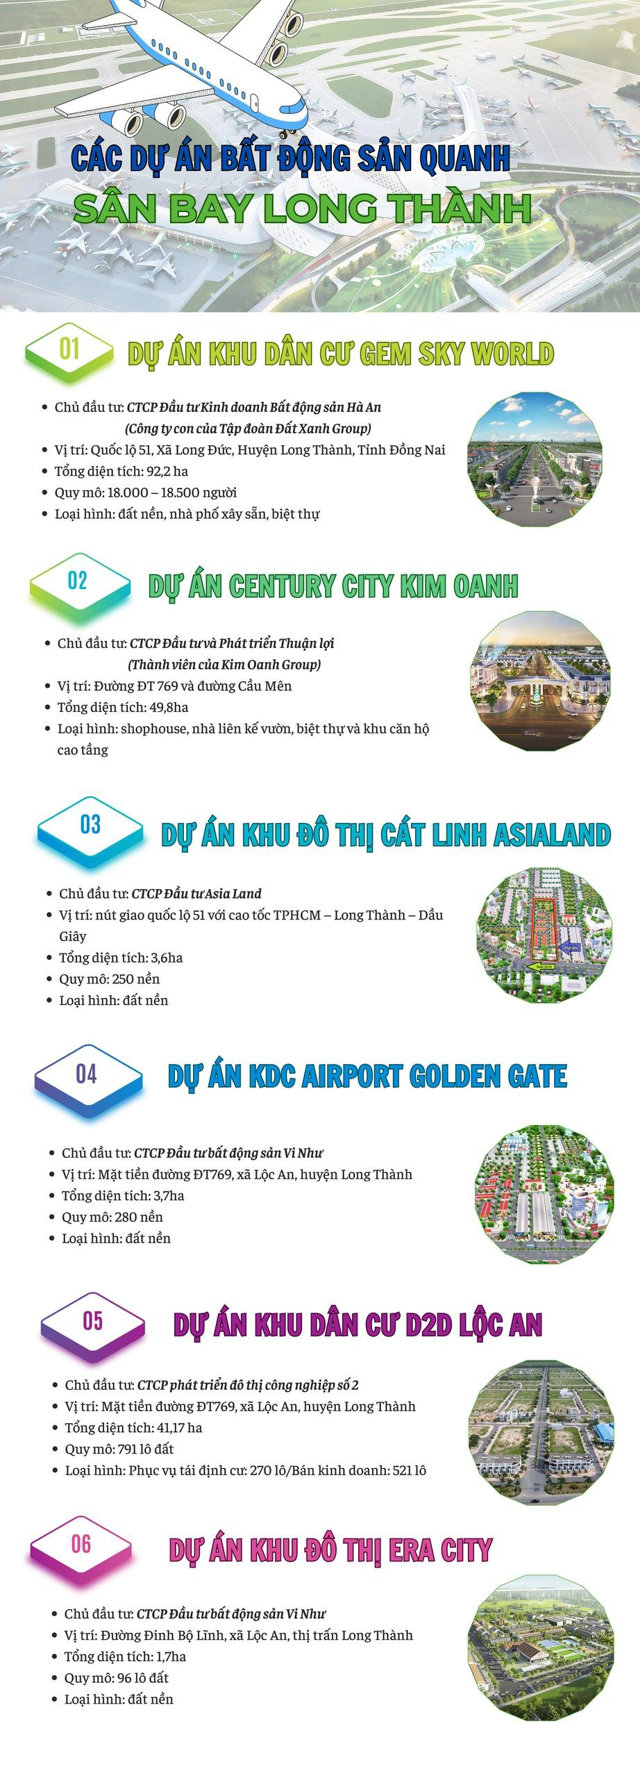 [Inforgraphic] Điểm danh các dự án đang triển khai quanh sân bay Long Thành – Đồng Nai - Ảnh 1